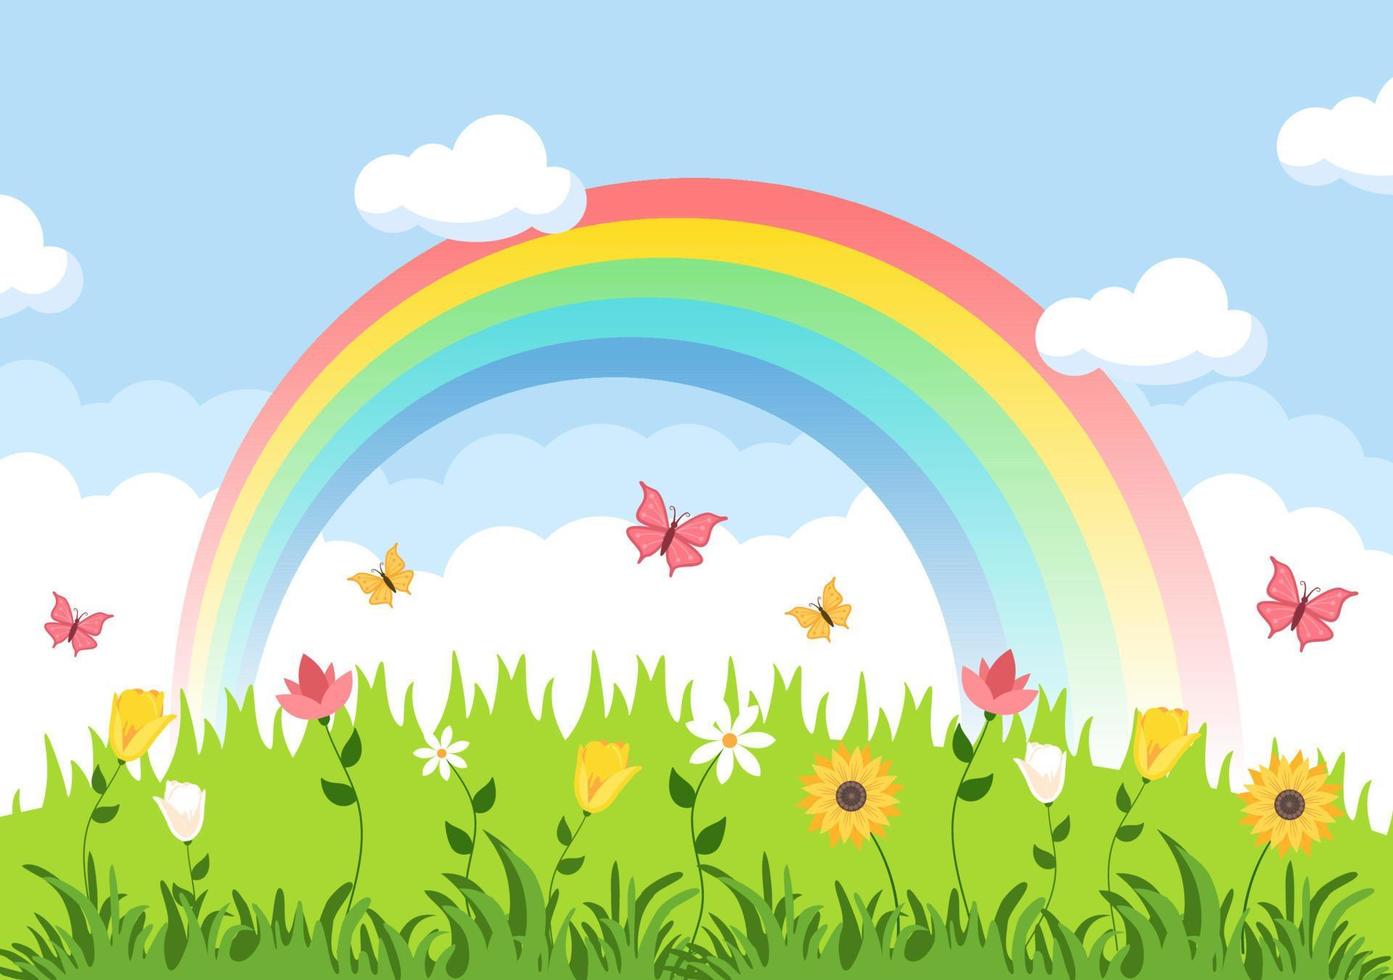 sfondo del paesaggio primaverile con stagione dei fiori, arcobaleno e pianta per promozioni, riviste, pubblicità o siti Web. illustrazione vettoriale della natura